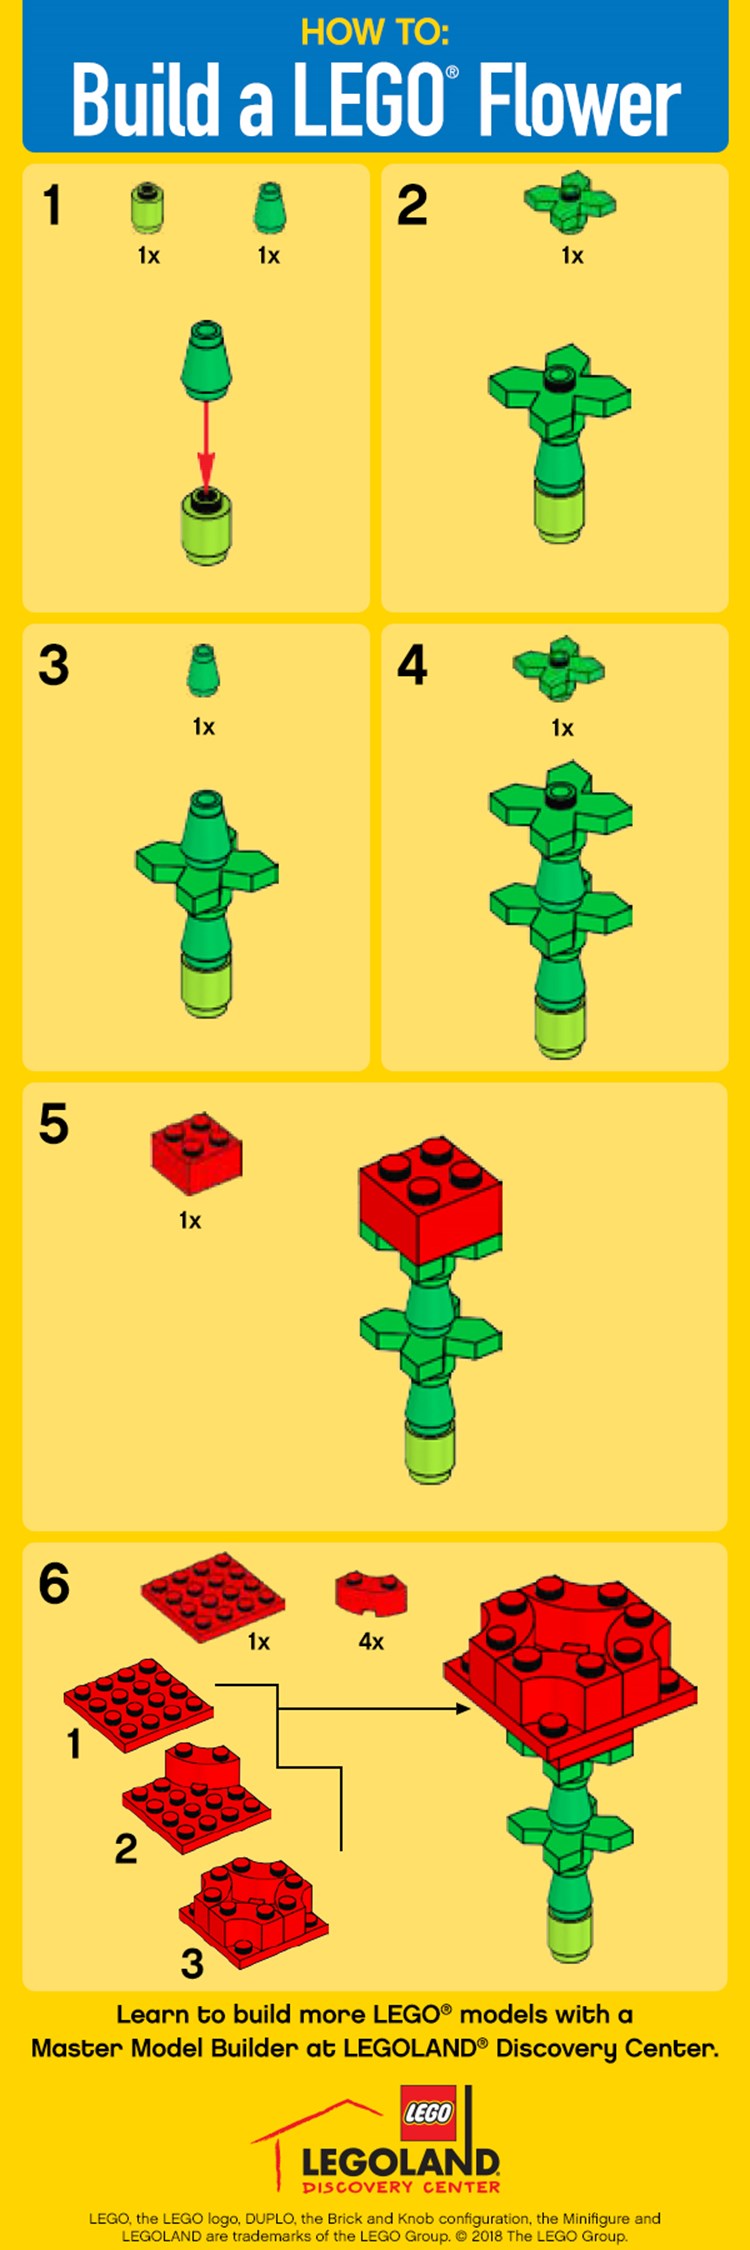 How To Build A Lego Flower | LEGOLAND Discovery Center